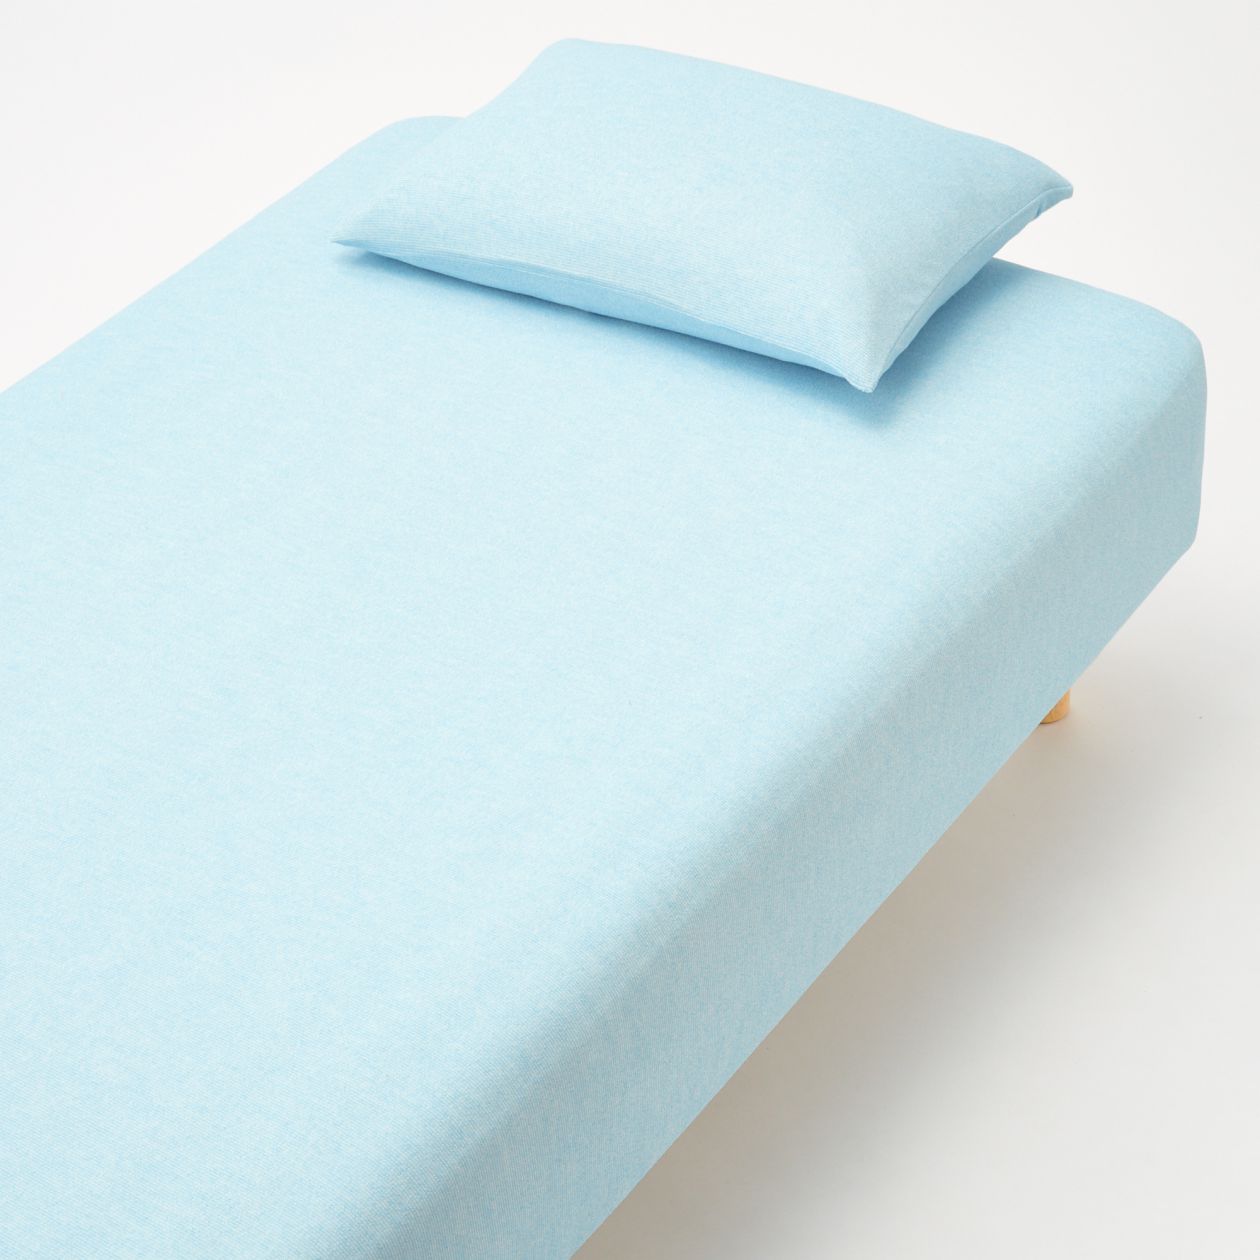 cotton bed mattress near me